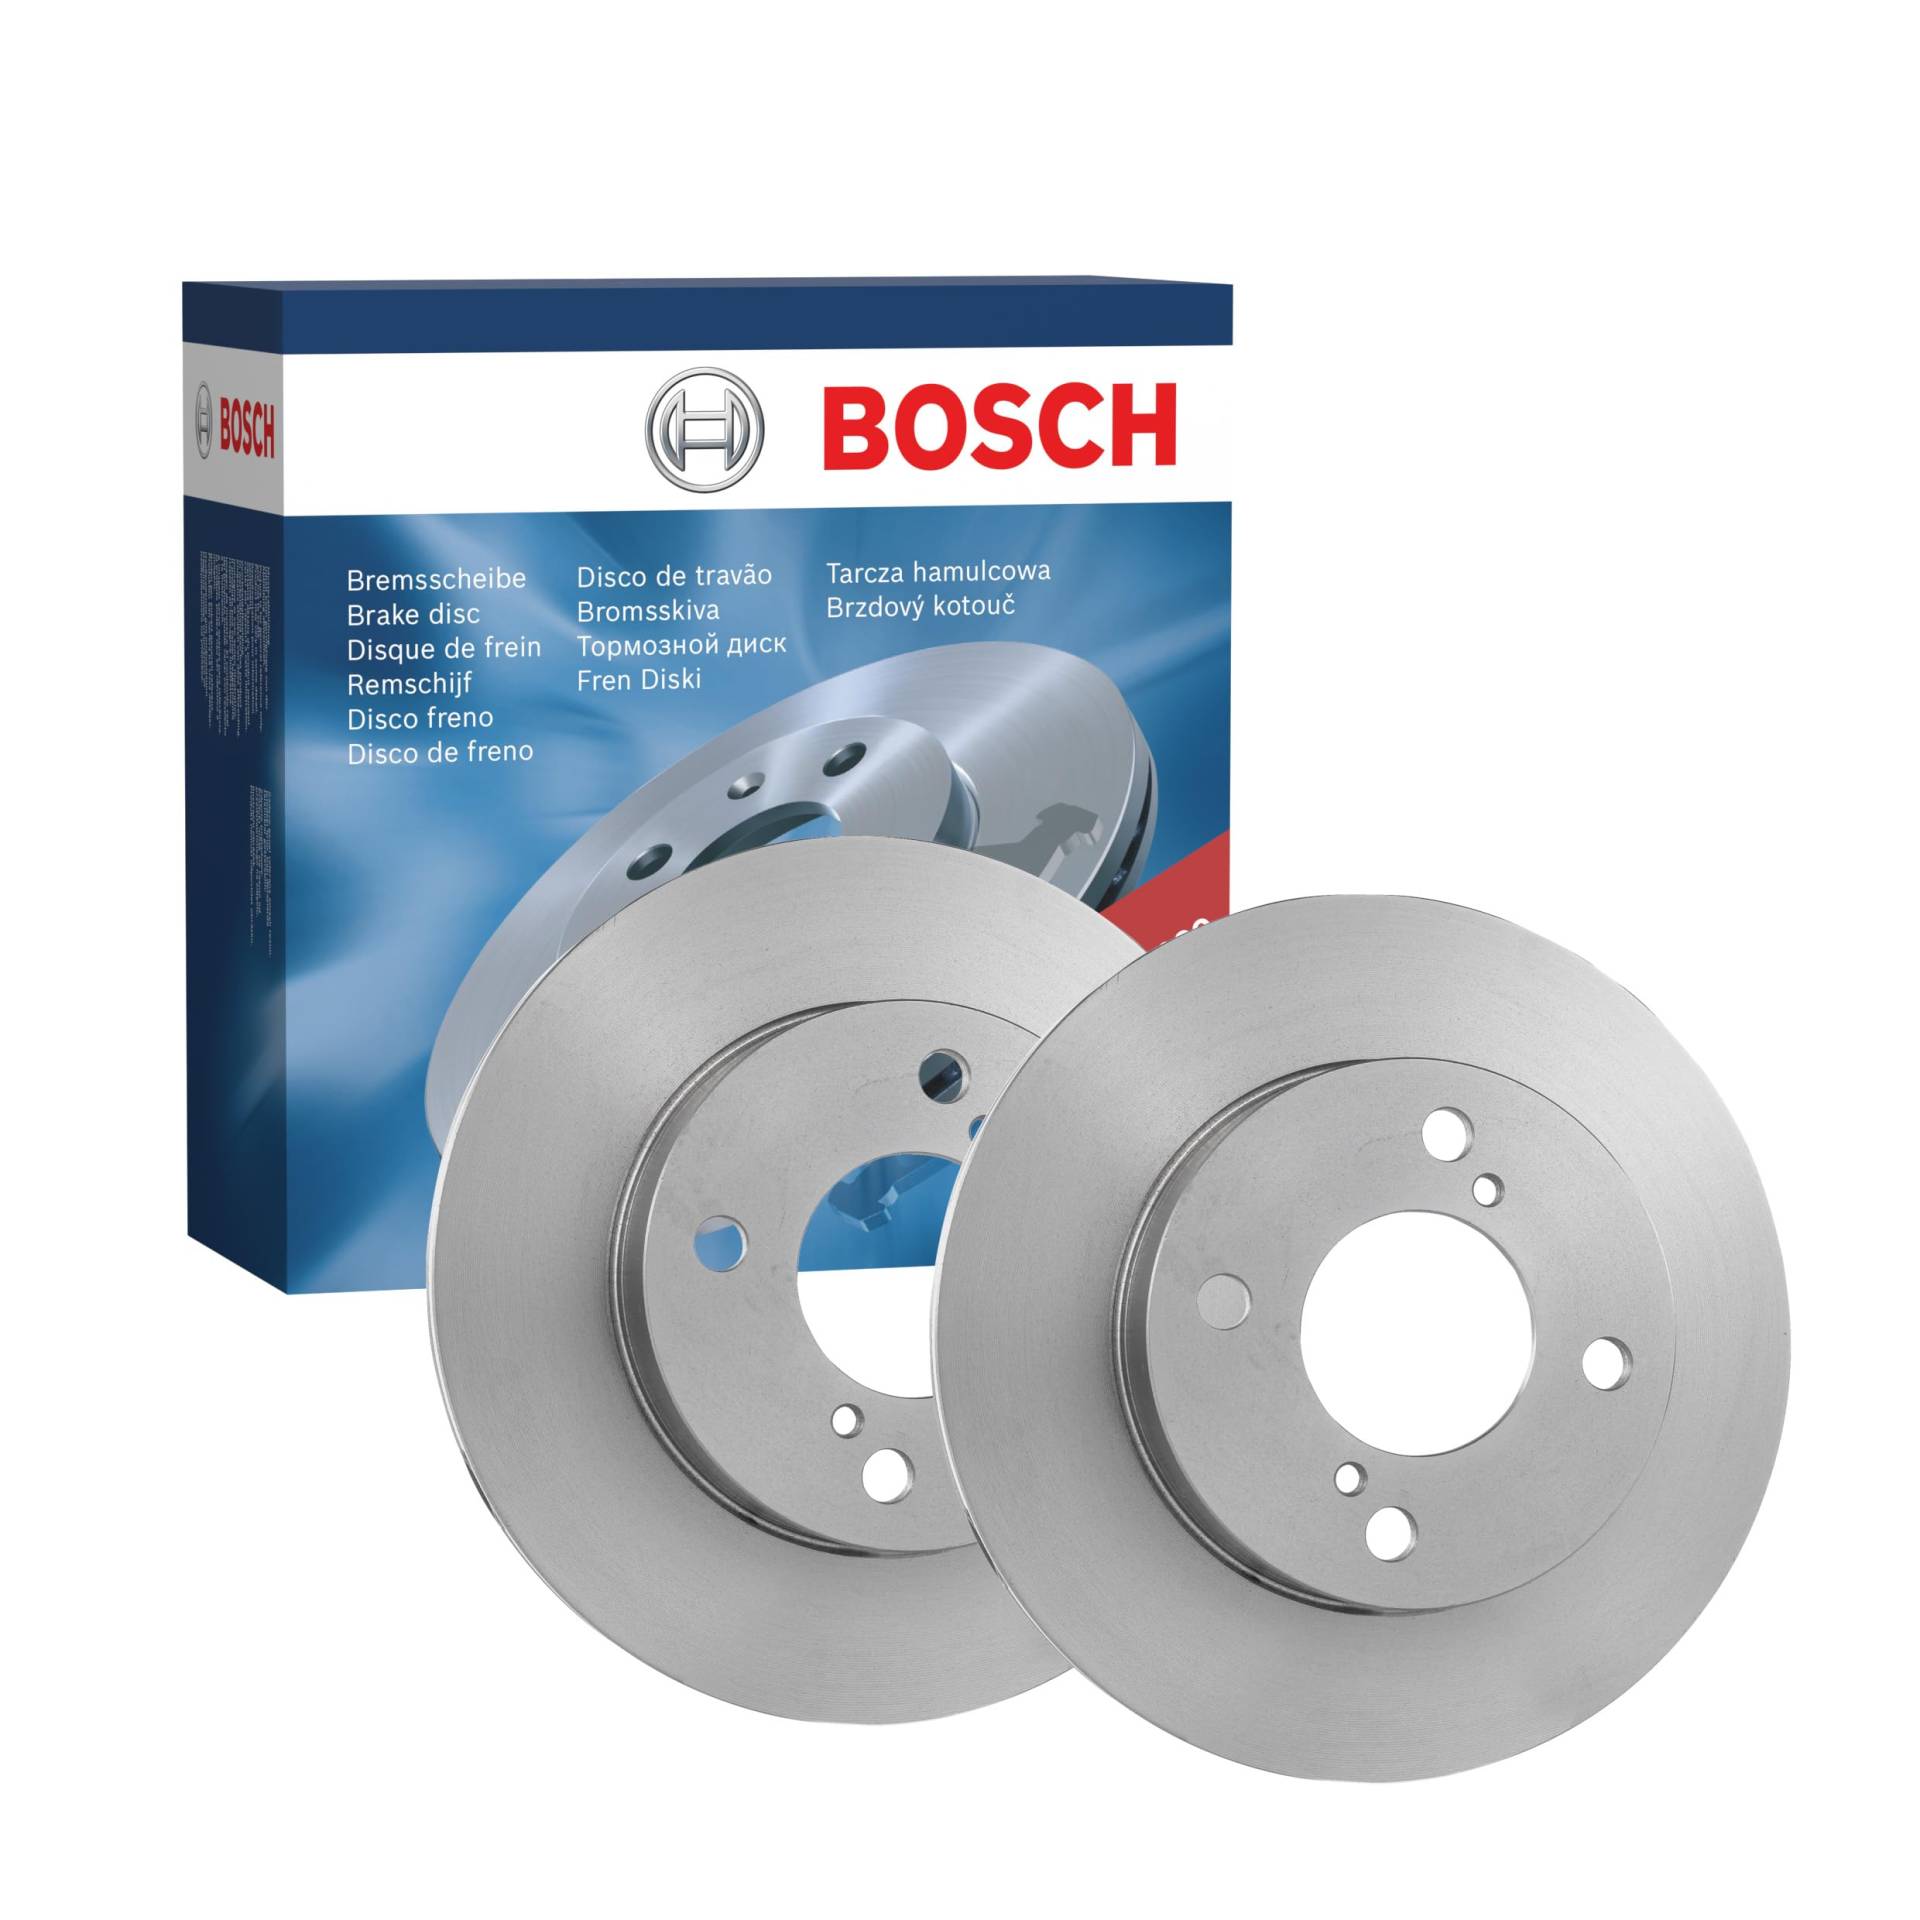 Bosch BD1608 Bremsscheiben - Vorderachse - ECE-R90 Zertifizierung - zwei Bremsscheiben pro Set von Bosch Automotive